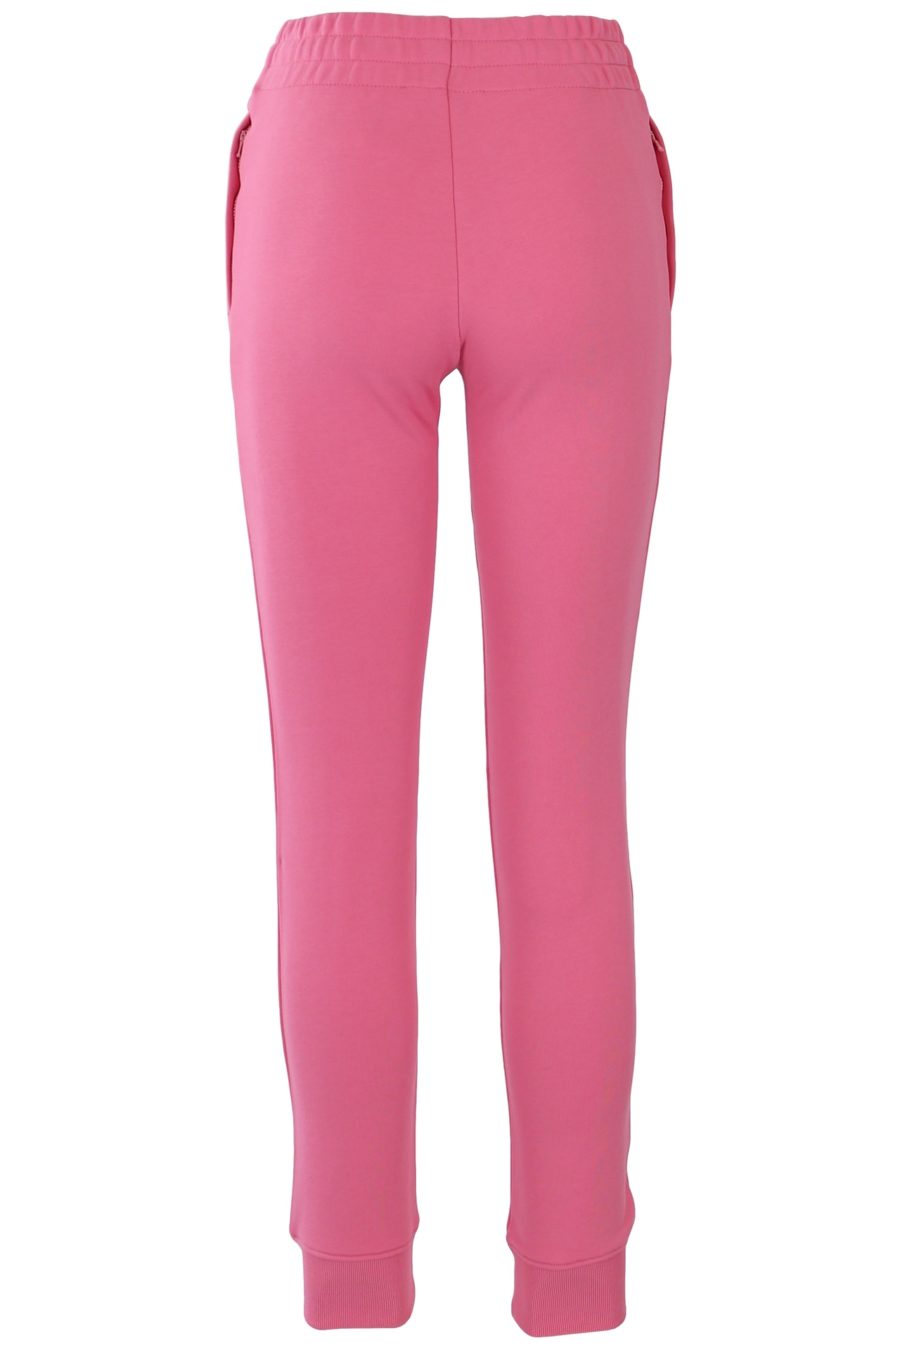 Pantalón Moschino Couture rosa con logo - 406e5842a6c639097166f8573e2a17bdbaedafa2